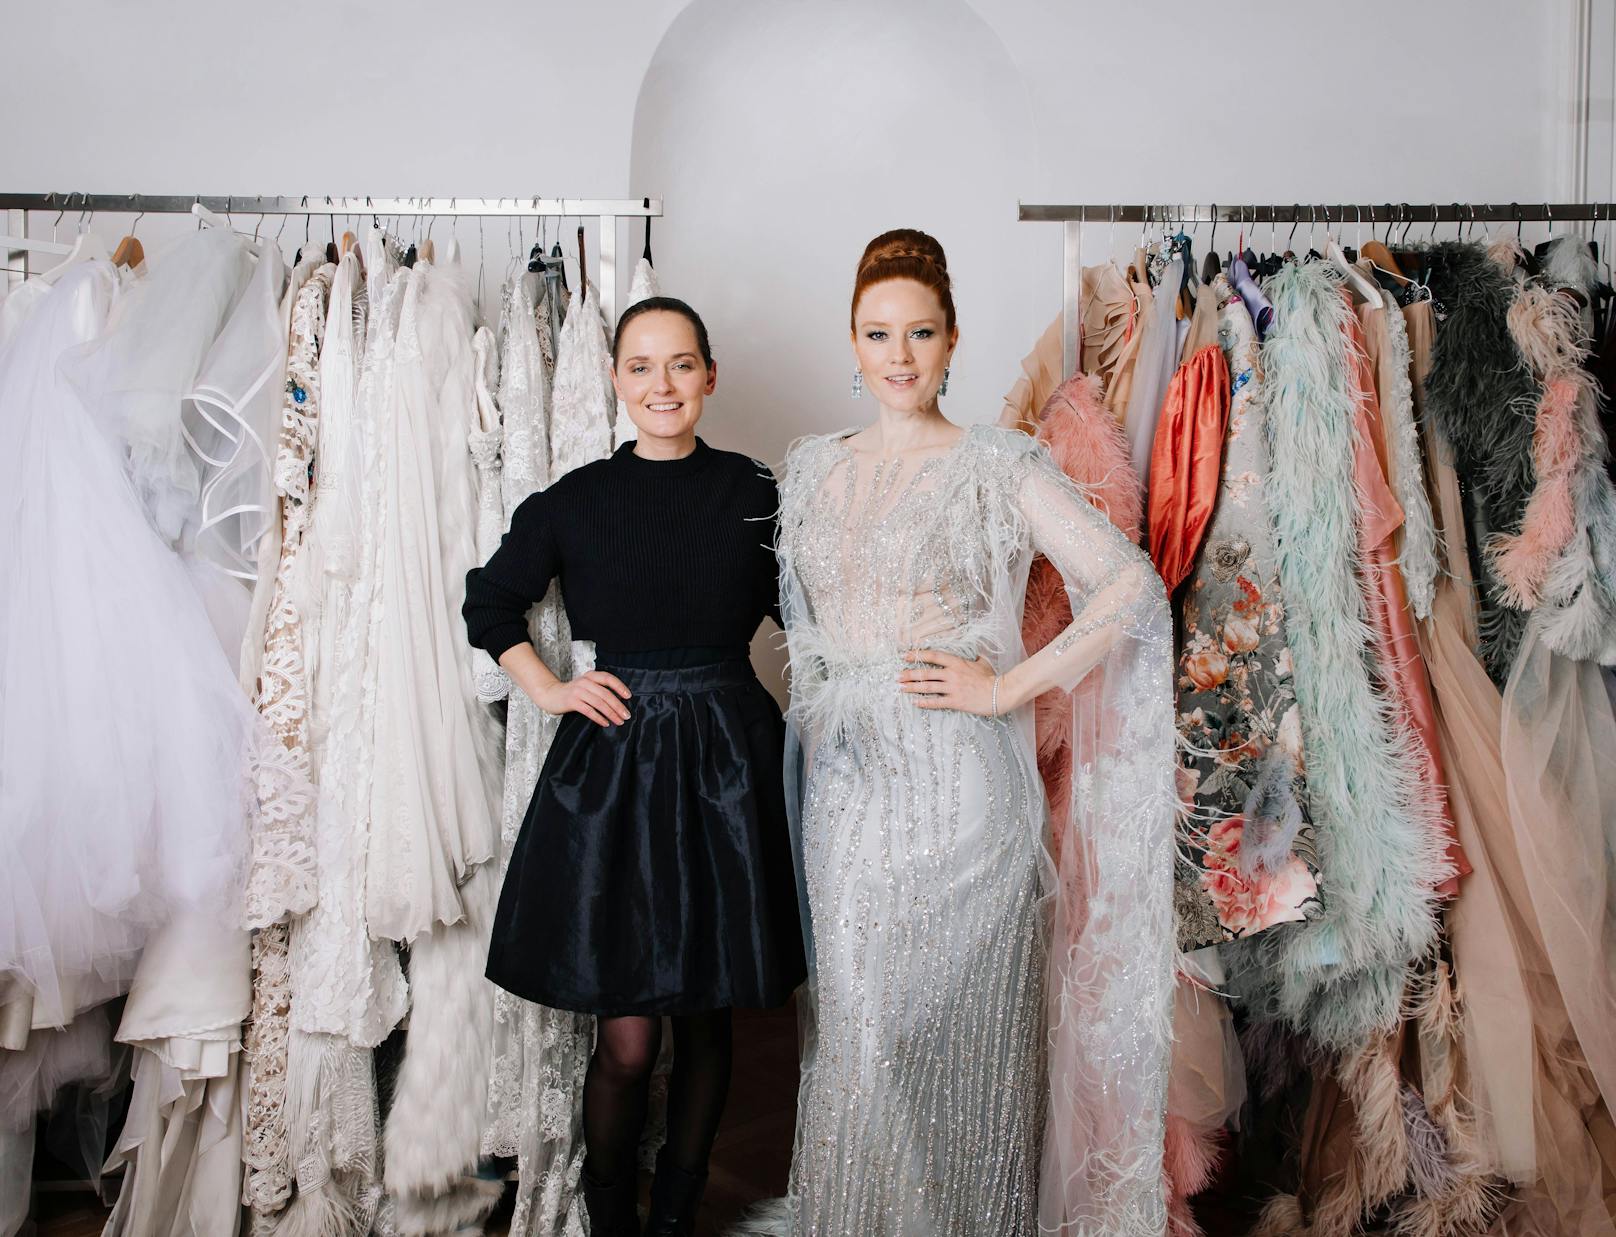 Die Modeschöpferin selbst wird ebenfalls am Opernball erscheinen, in einer Robe, die seit drei Jahren auf den Opernball wartet.